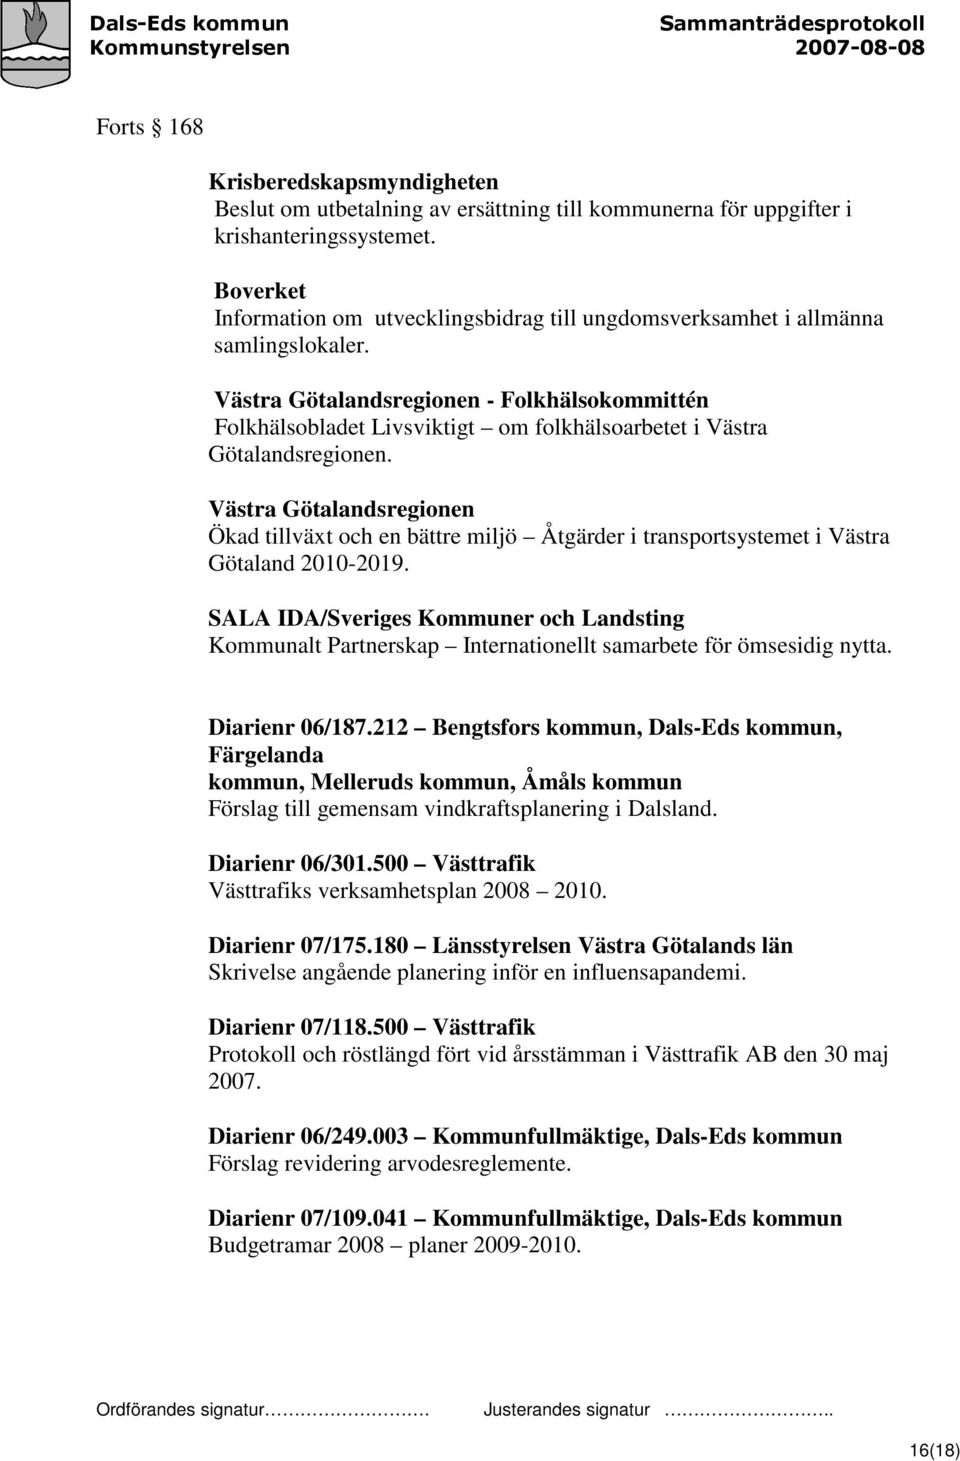 Västra Götalandsregionen - Folkhälsokommittén Folkhälsobladet Livsviktigt om folkhälsoarbetet i Västra Götalandsregionen.